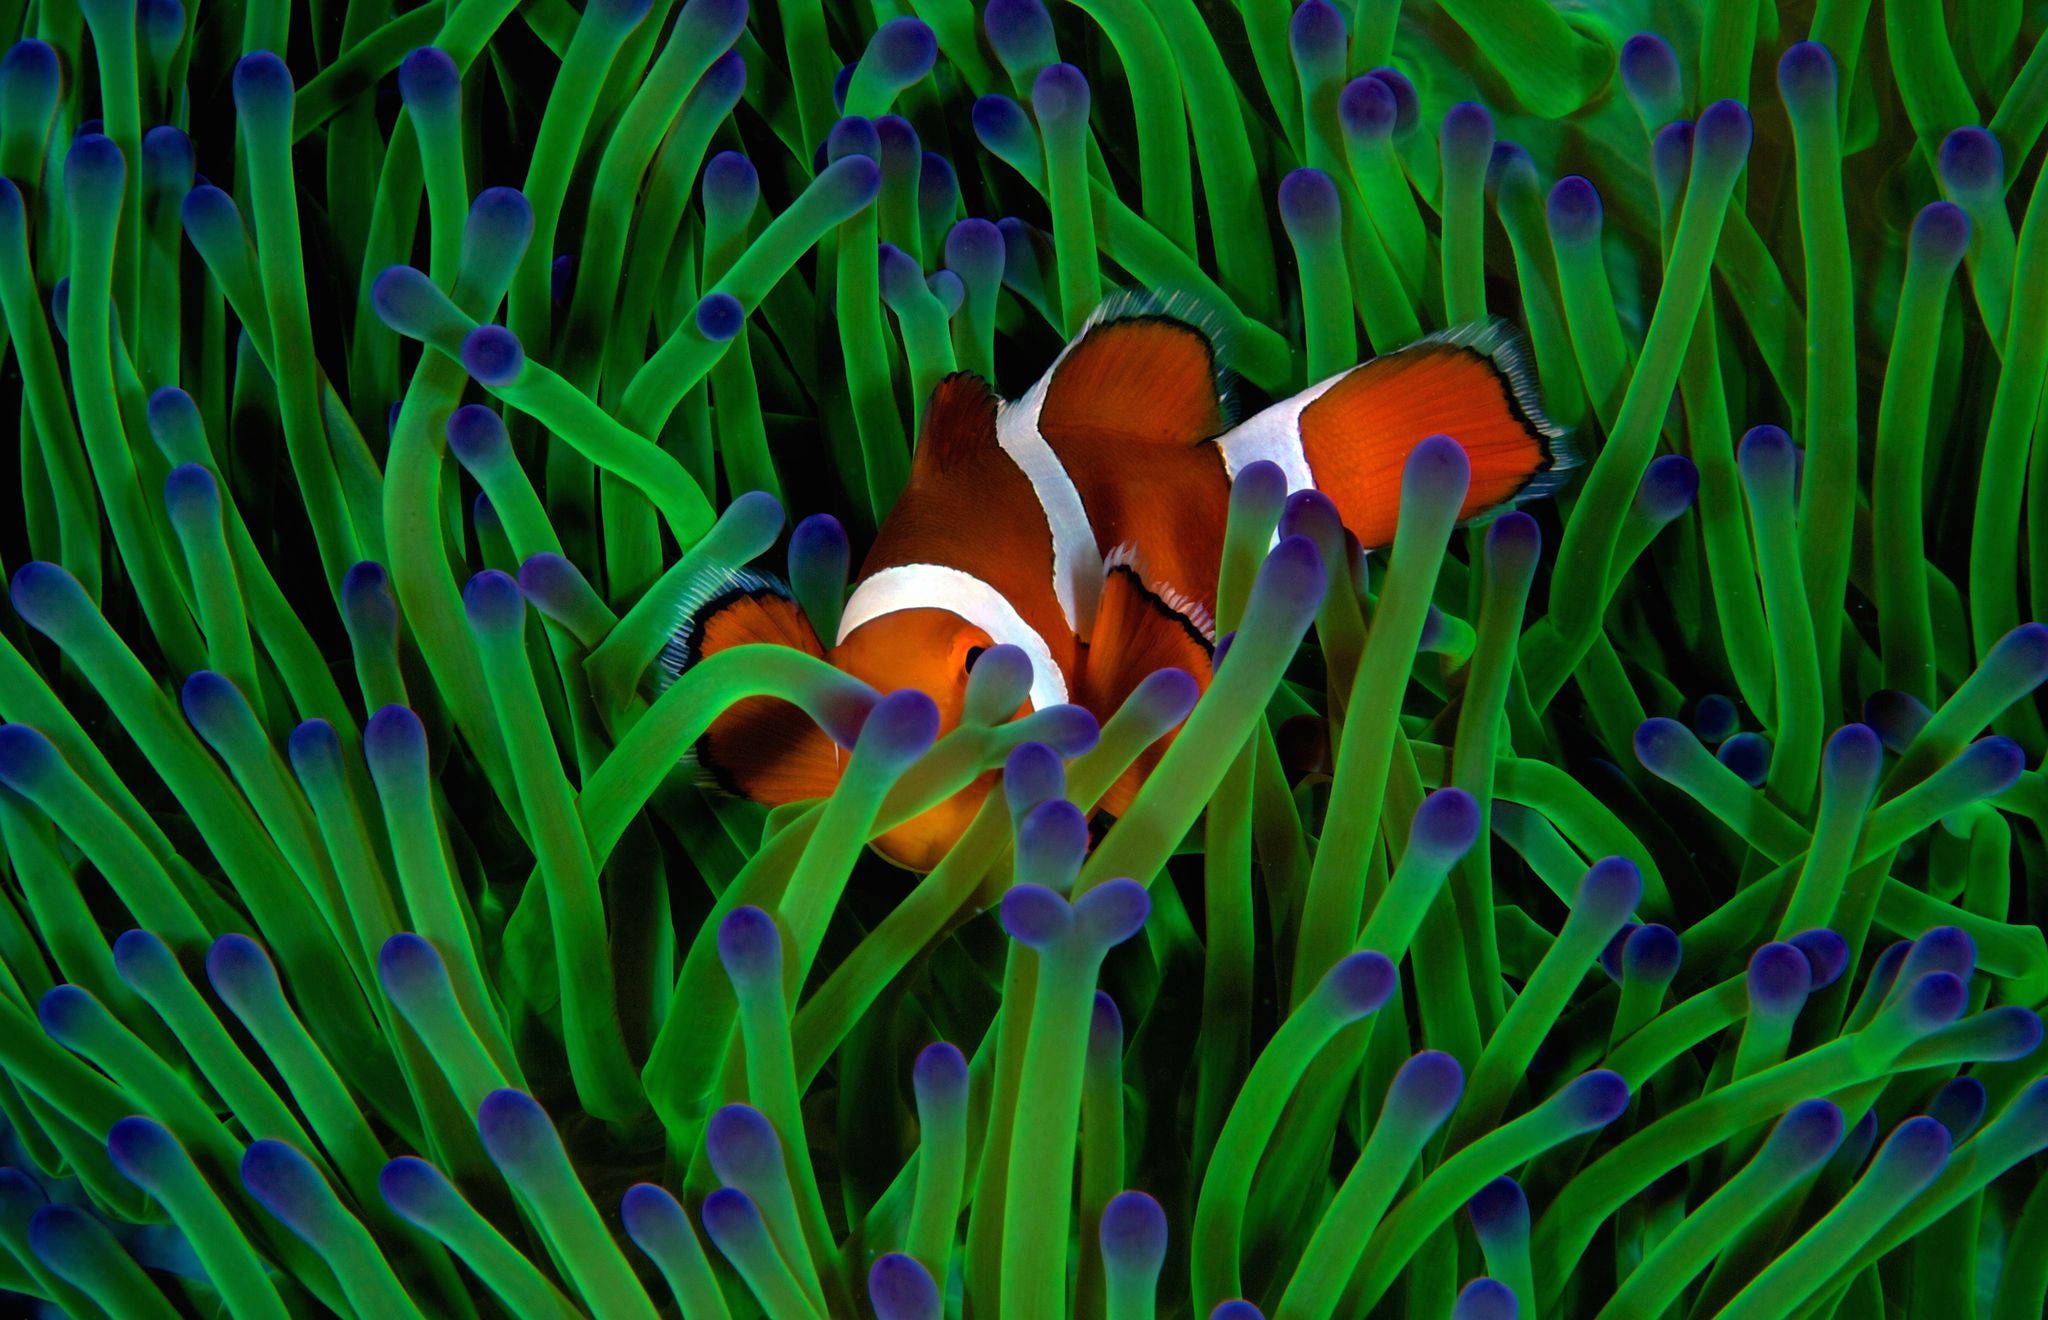 Fish in anemones